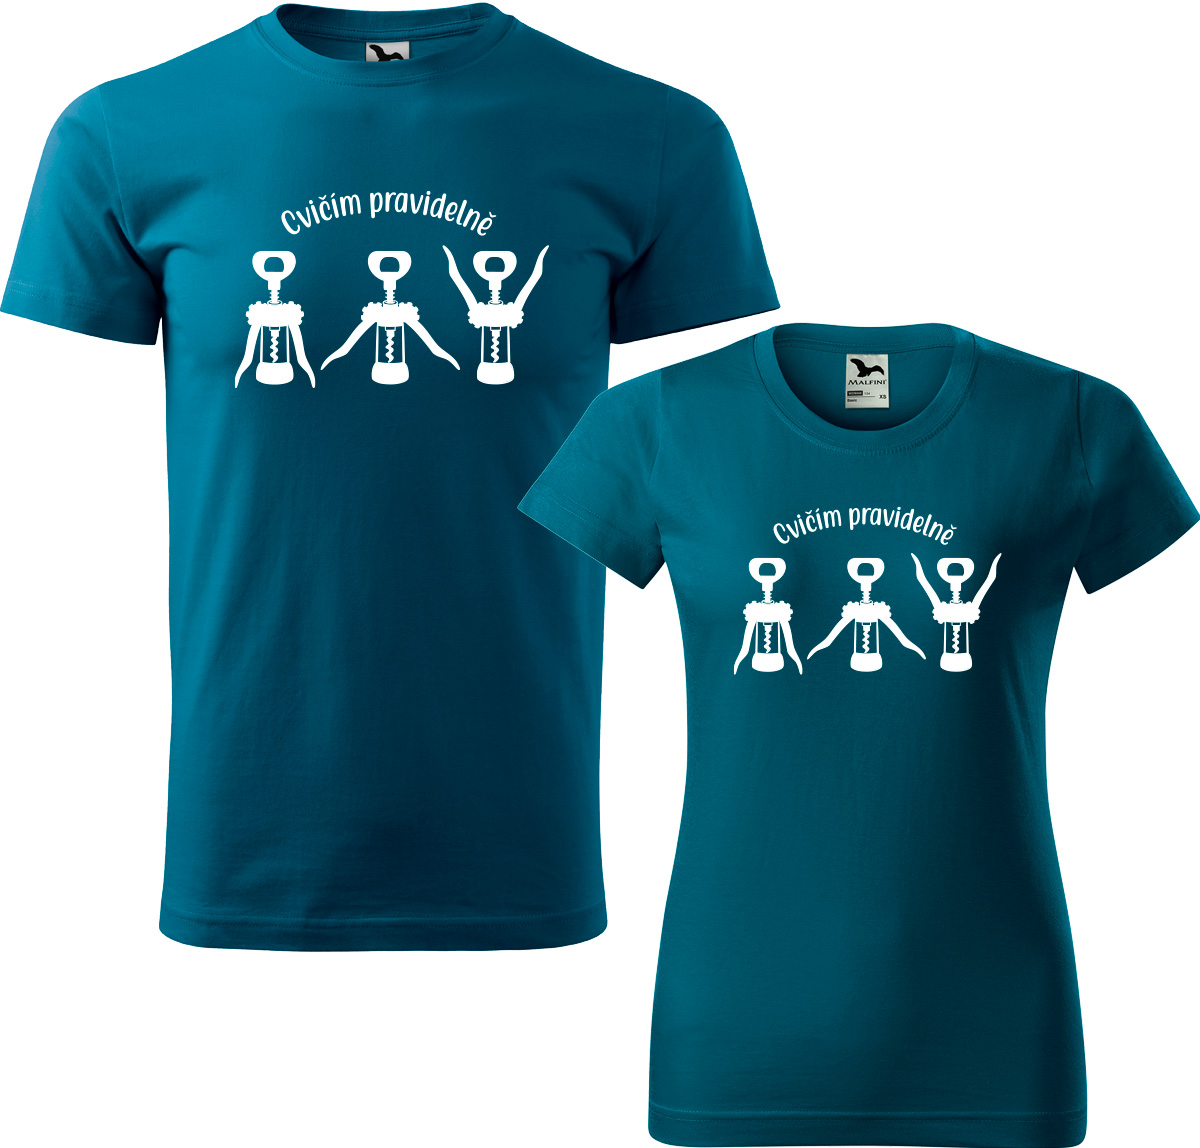 Trička pro páry - Cvičím pravidelně Barva: Petrolejová (93), Velikost dámské tričko: L, Velikost pánské tričko: XL